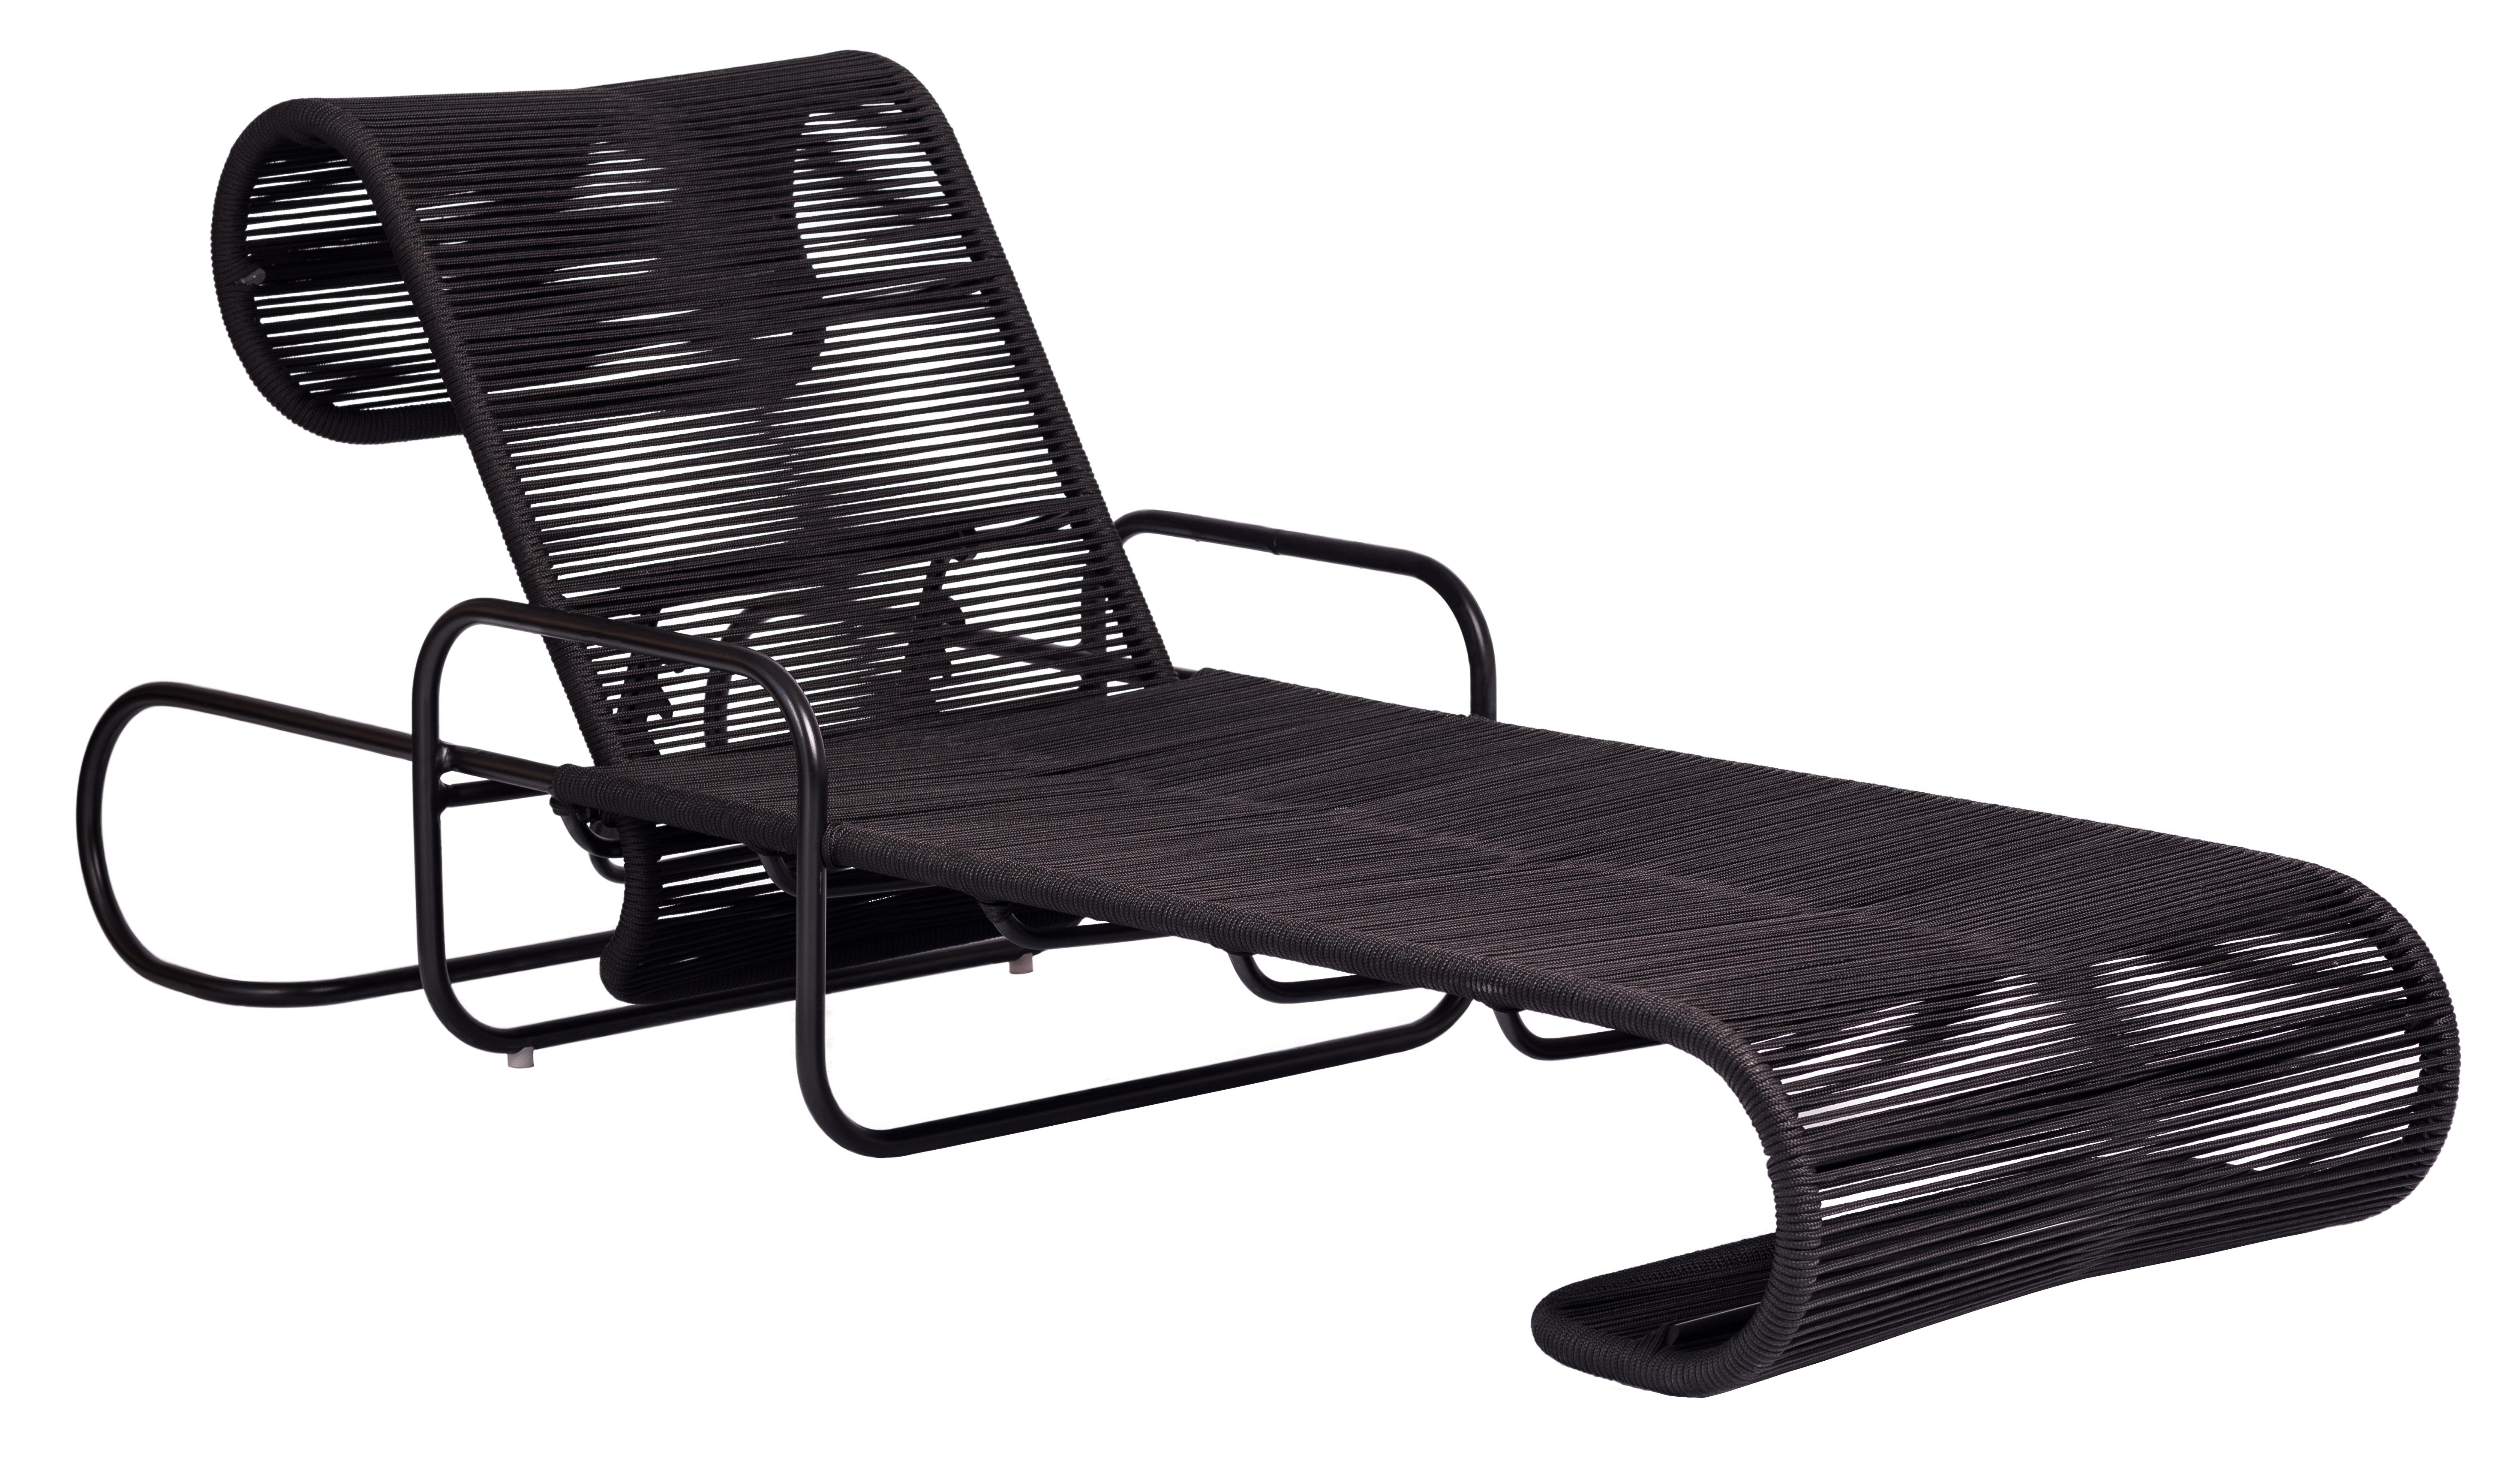 La chaise ELO fait partie de la collection Elo dont le design s'inspire de la forme des équipements d'étirement et de gymnastique.
L'angle du dossier est réglable pour permettre une position entièrement inclinée.

Disponible avec une fixation en